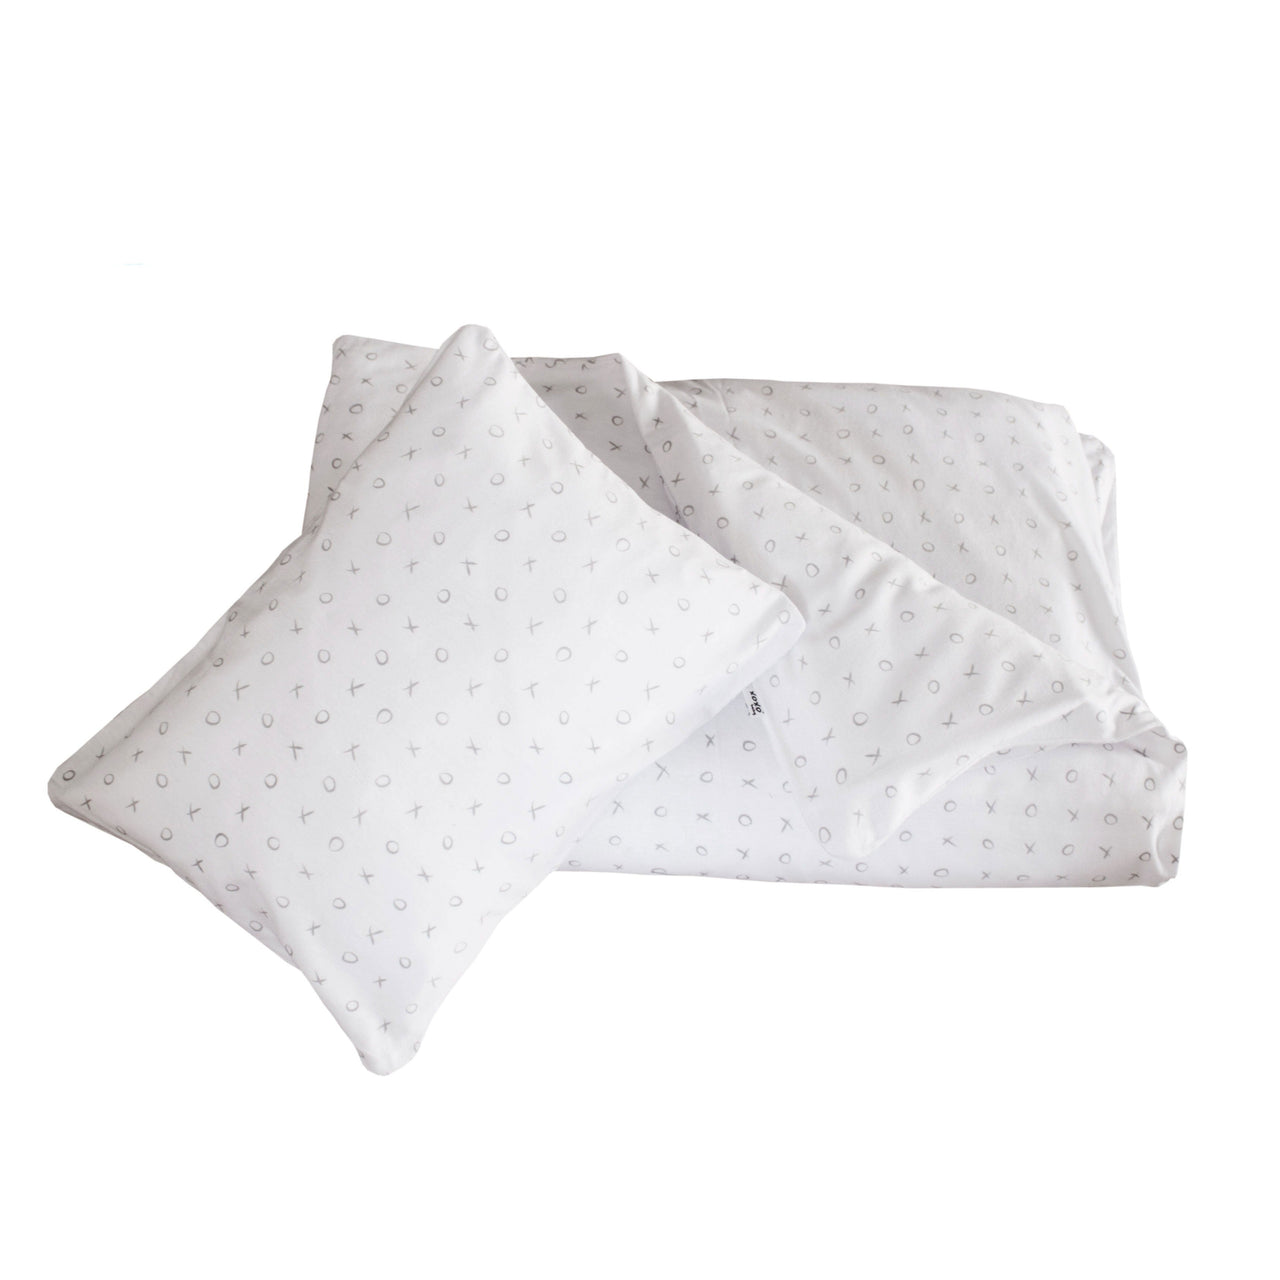 Duvet Cover and Pillowcase - Grey XOXO